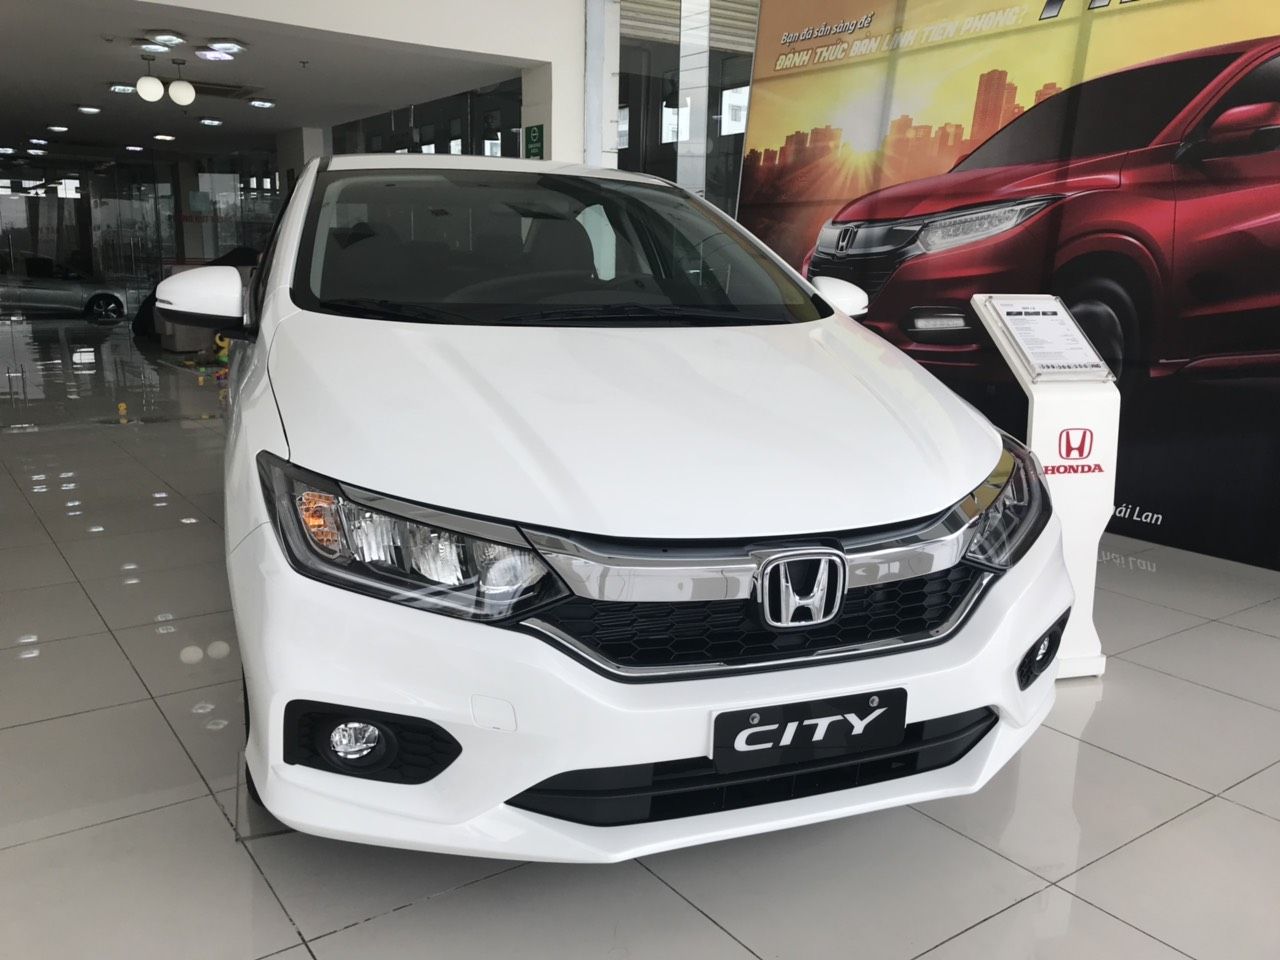 Honda City 2019 - Honda ô tô Hà Nội -Honda CITY giá tốt nhất miền Bắc, tặng tiền mặt, phụ kiện, BHTV  0977.809.295-Ms Hải Yến